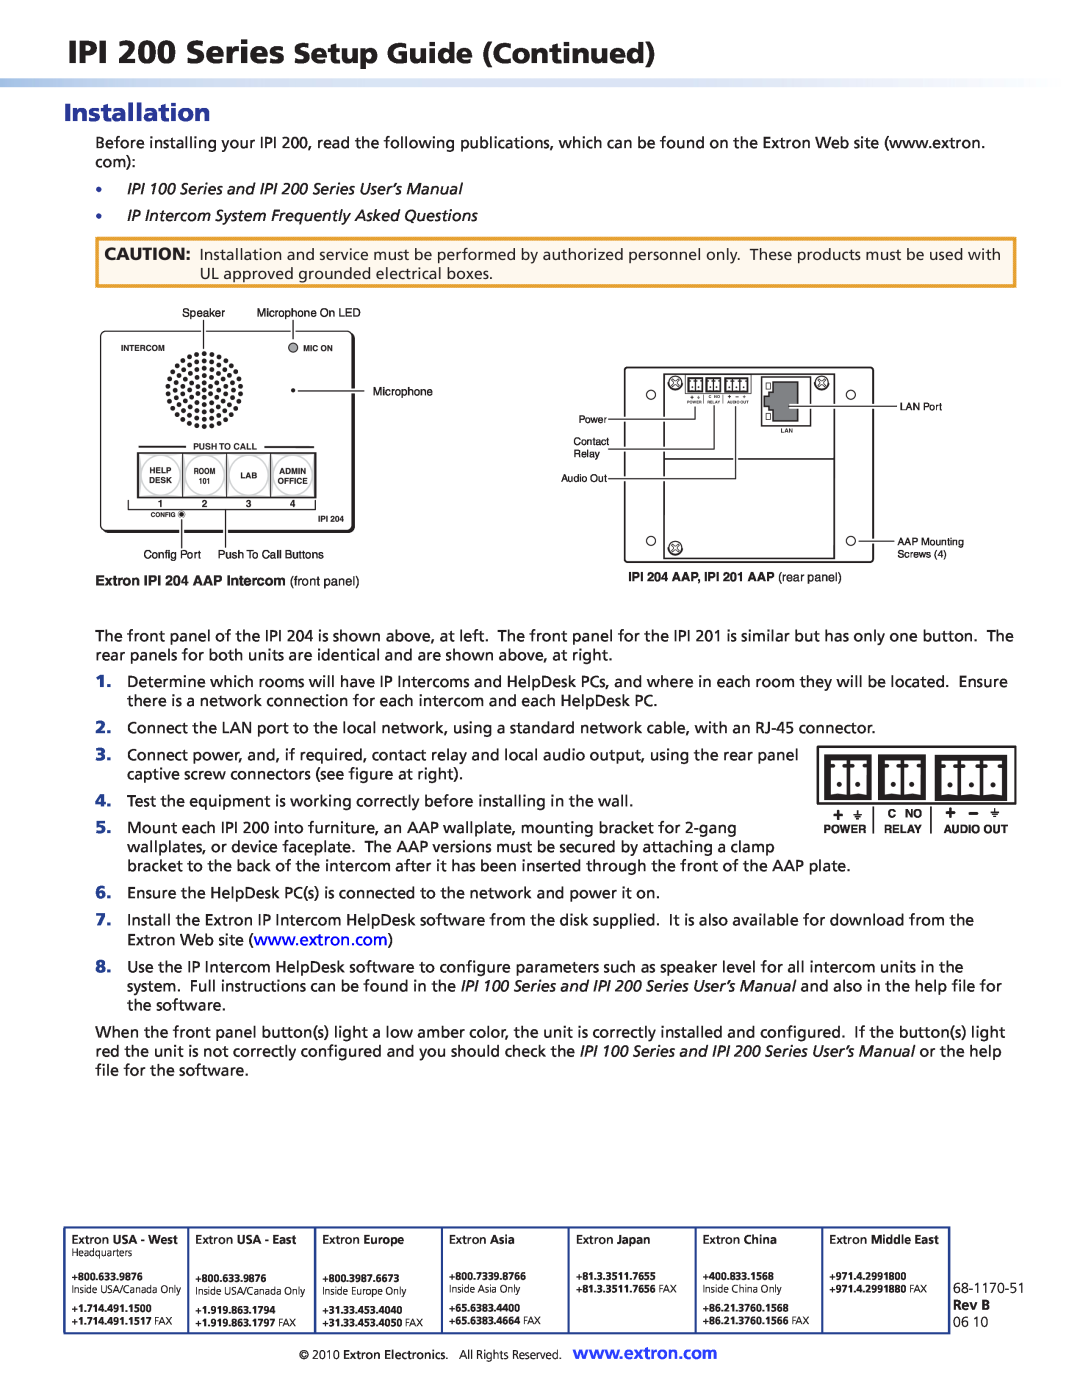 Extron electronic IPI 201, IPI204 setup guide Installation 